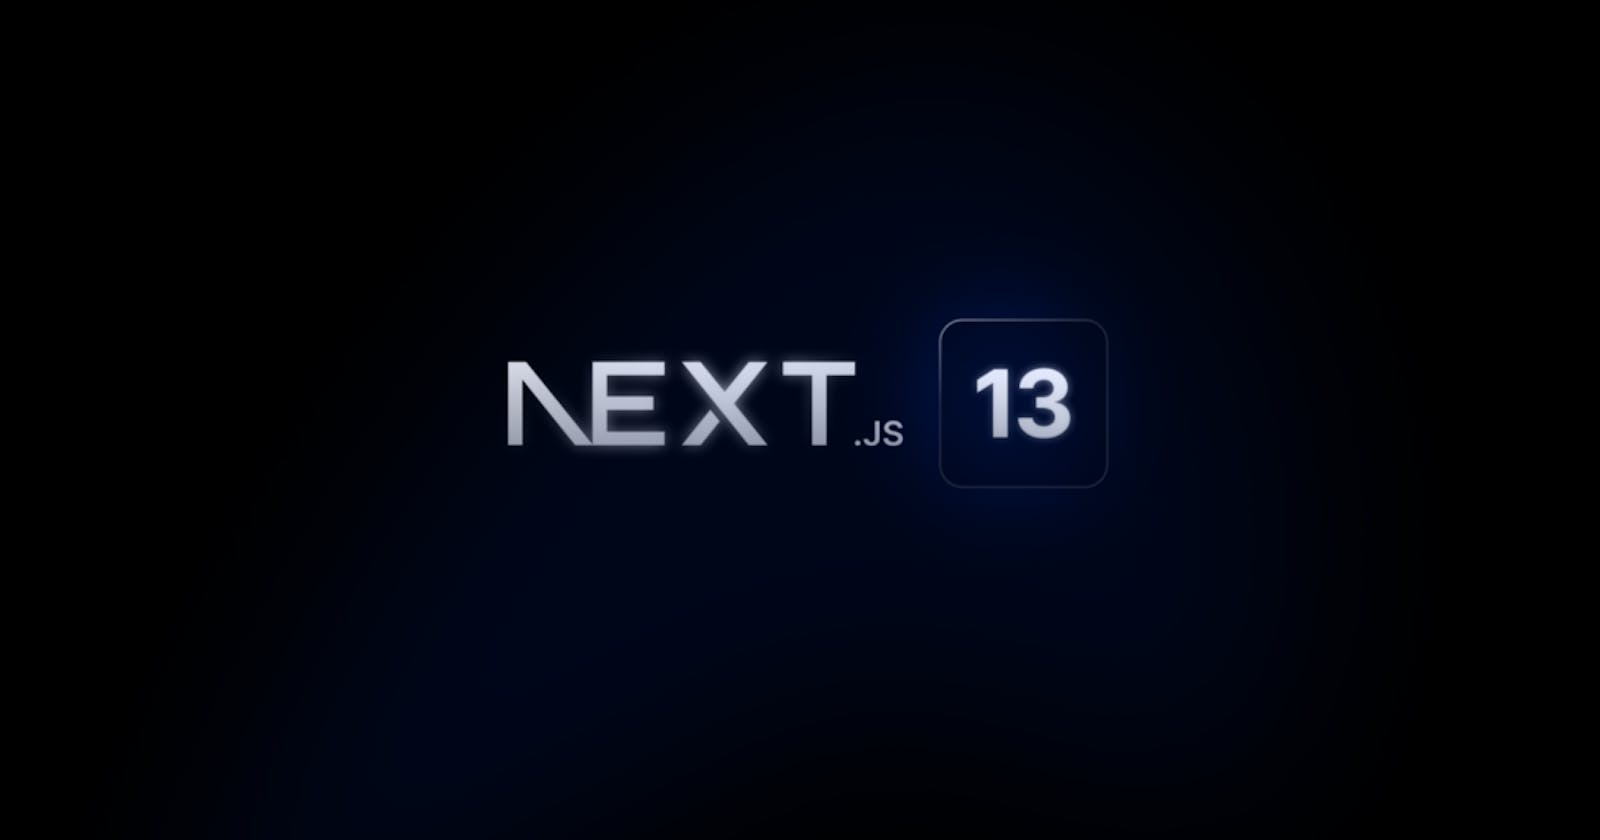 Next.js 13 Launched